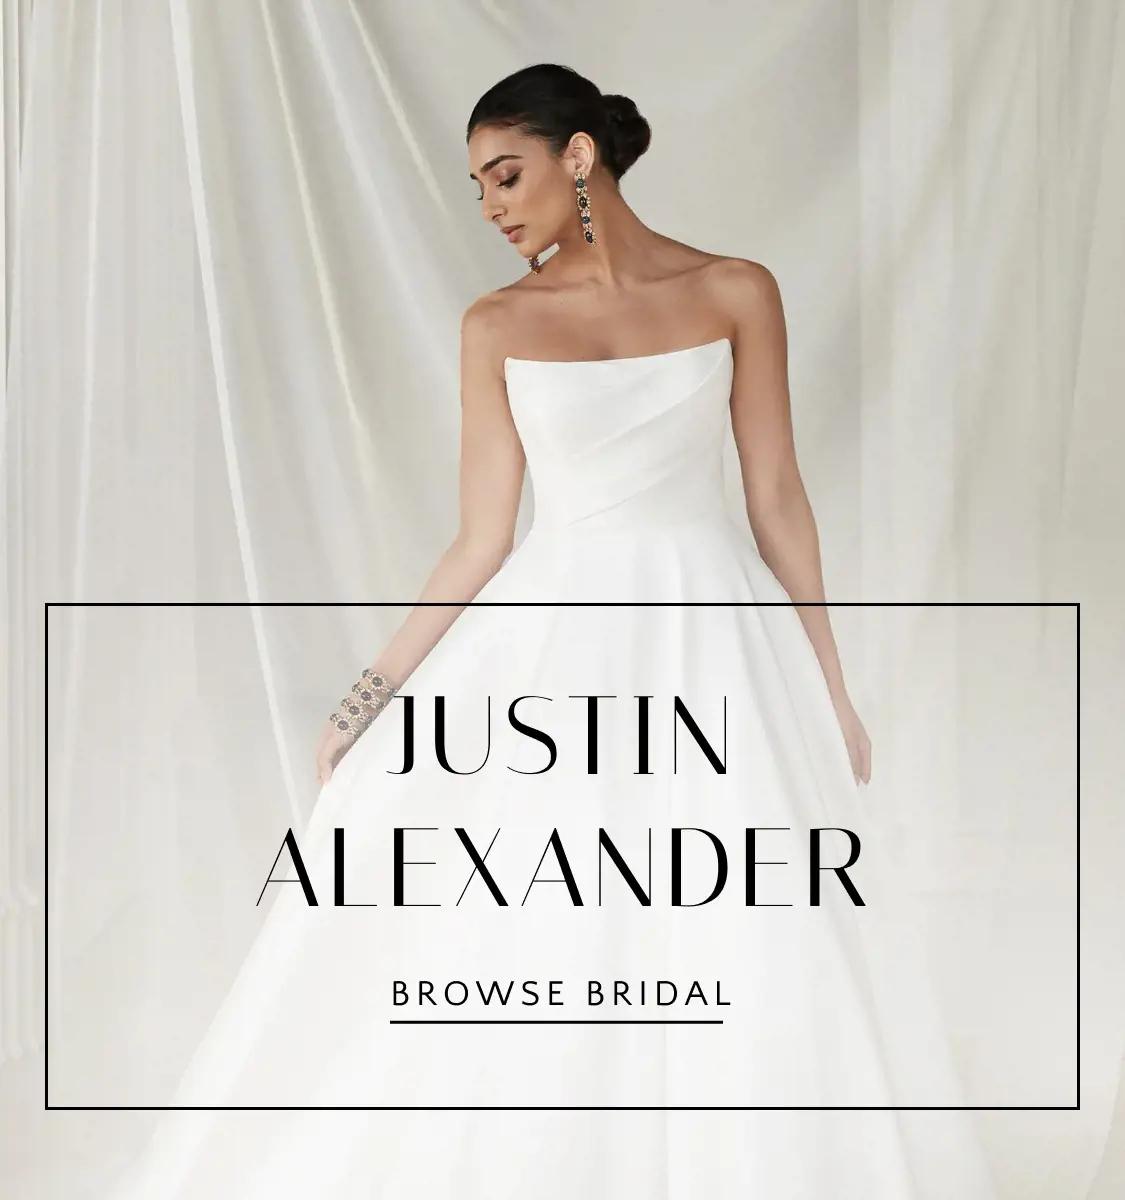 Justin Alexander Banner Mobile